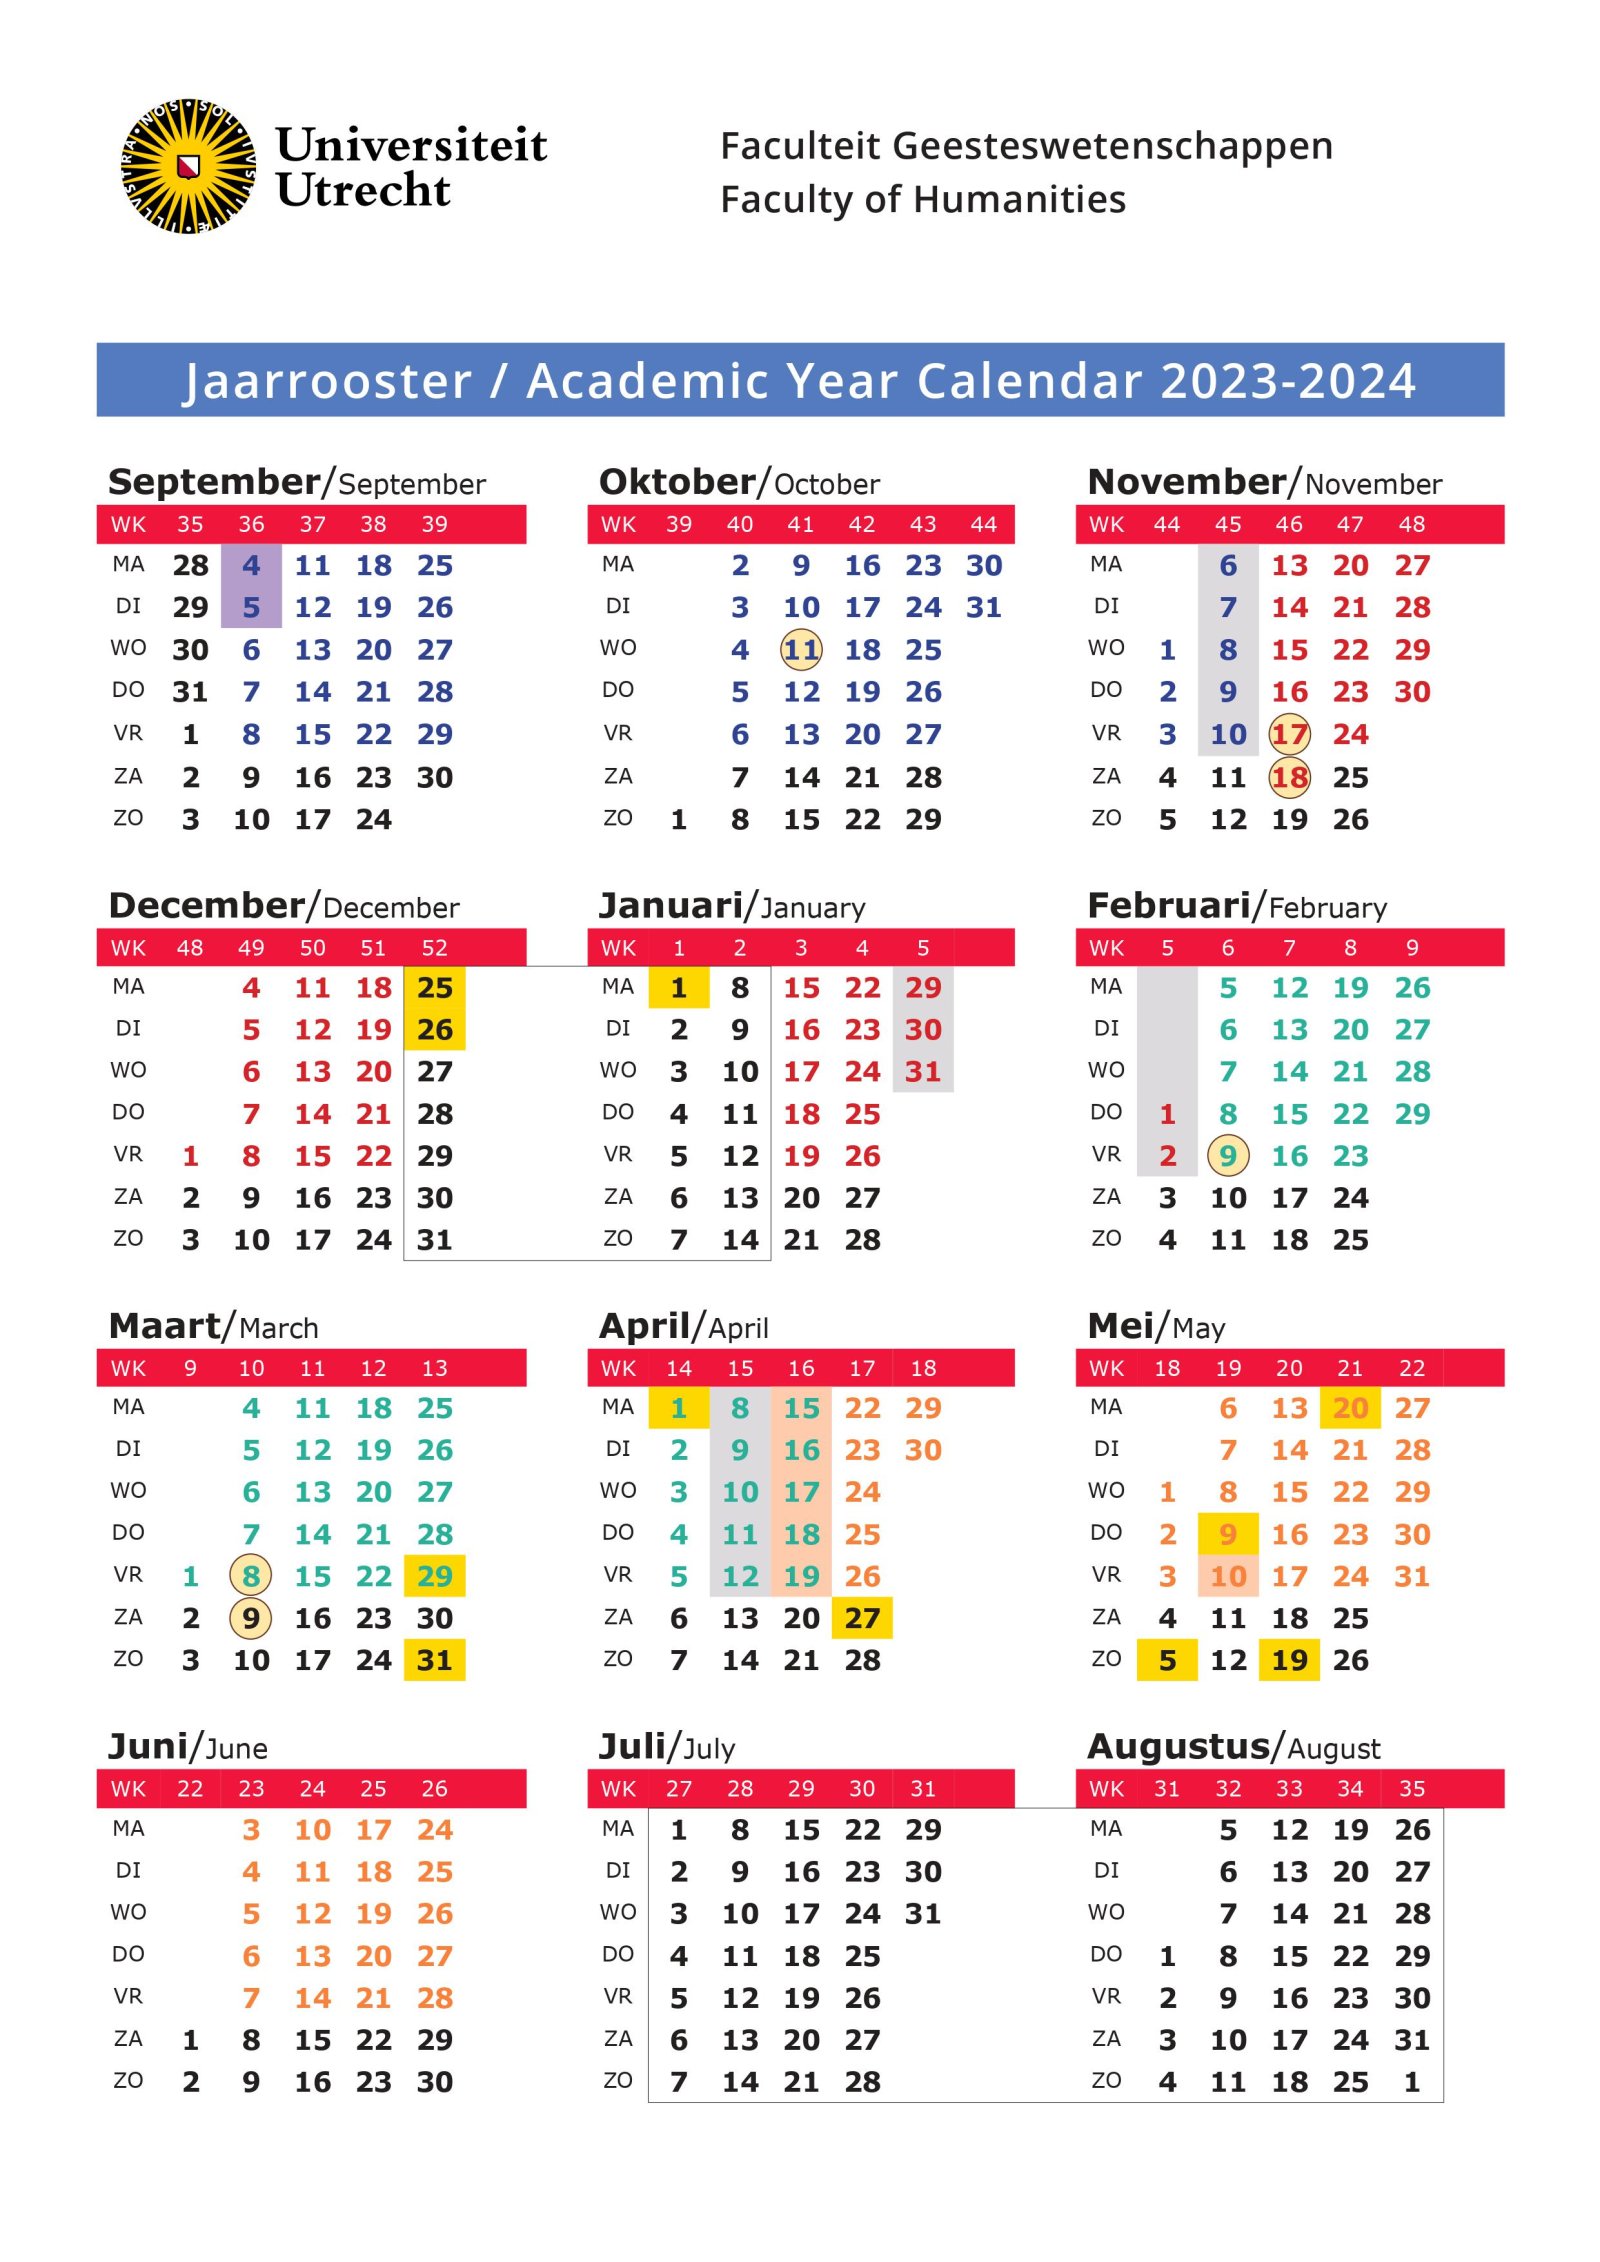 Academische jaarkalender Faculteit Geesteswetenschappen